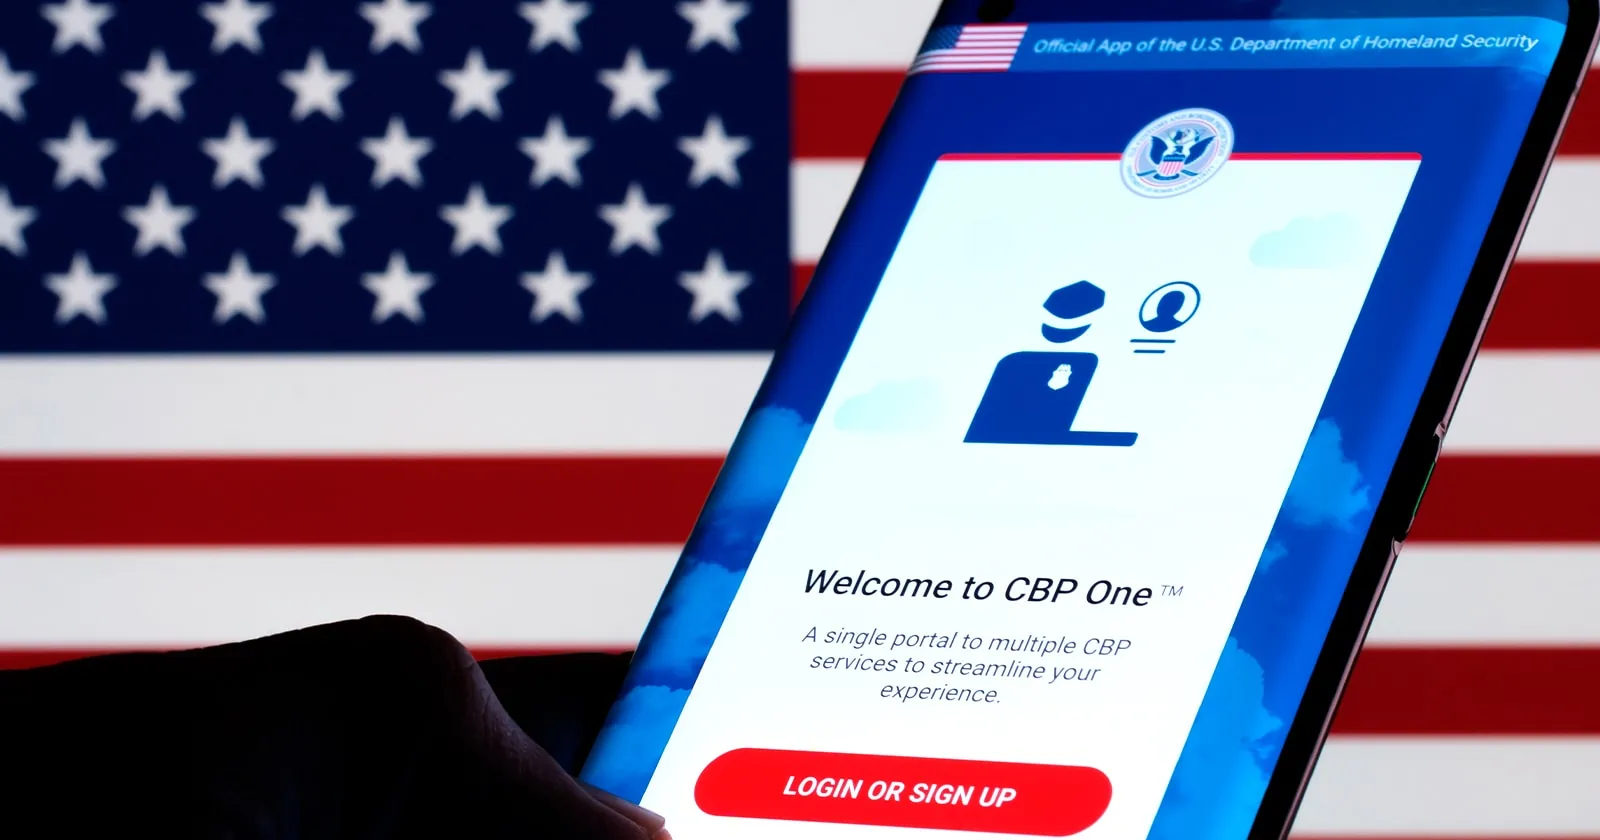 Conoce el Mejor Horario para Obtener Cita de Entrada a Estados Unidos mediante CBP One